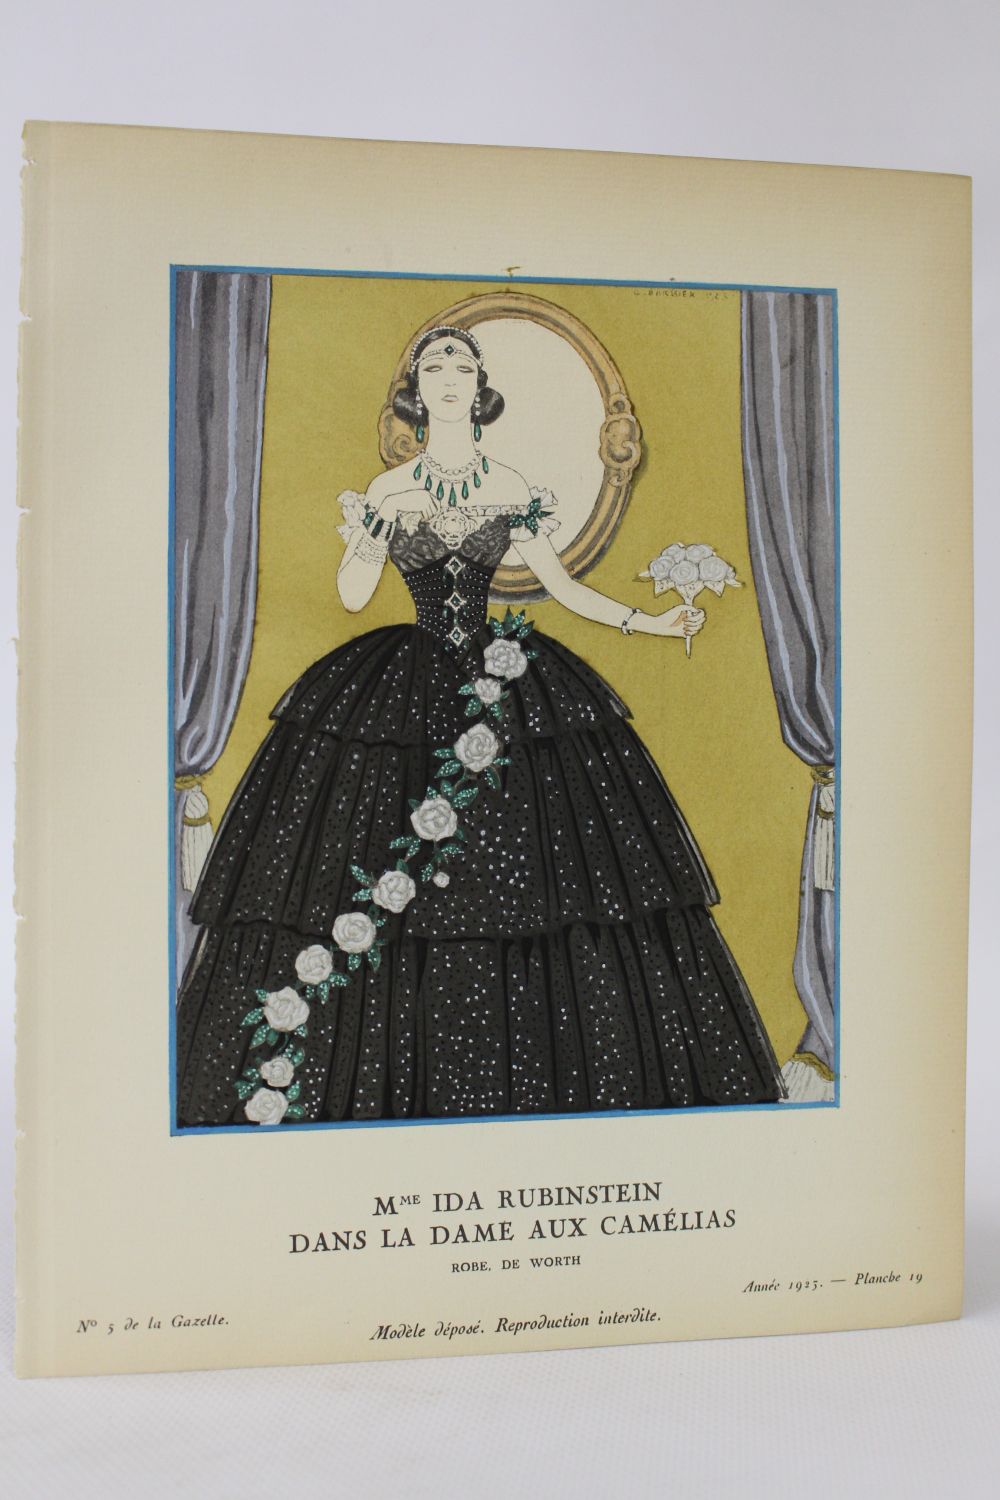 WORTH : Mme Ida Rubinstein dans La Dame aux camélias. Robe, de Worth  (pl.19, La Gazette